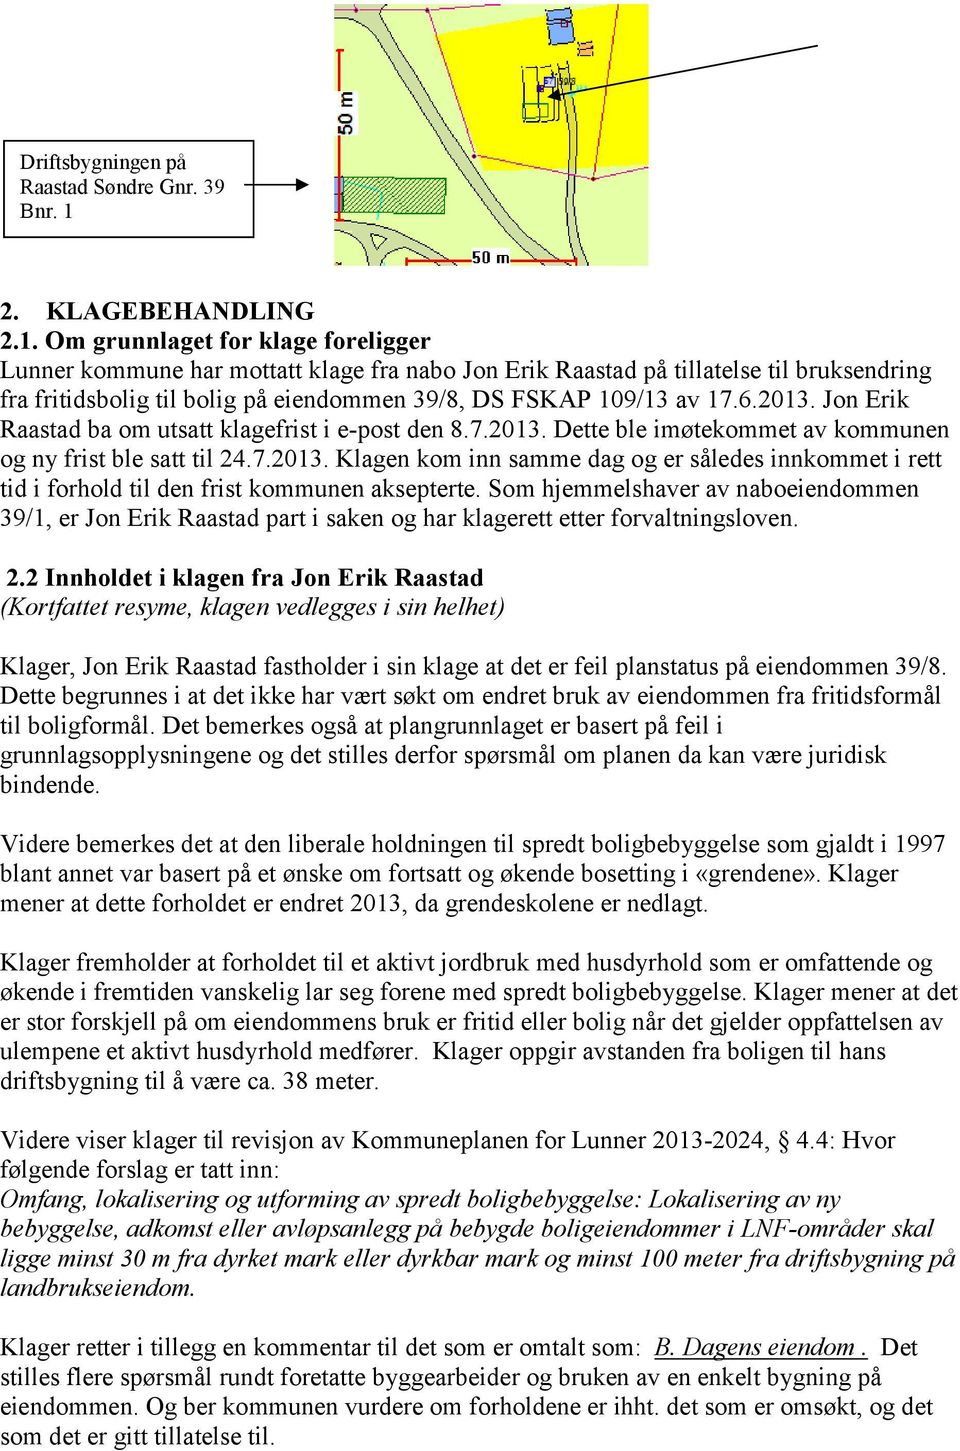 Om grunnlaget for klage foreligger Lunner kommune har mottatt klage fra nabo Jon Erik Raastad på tillatelse til bruksendring fra fritidsbolig til bolig på eiendommen 39/8, DS FSKAP 109/13 av 17.6.